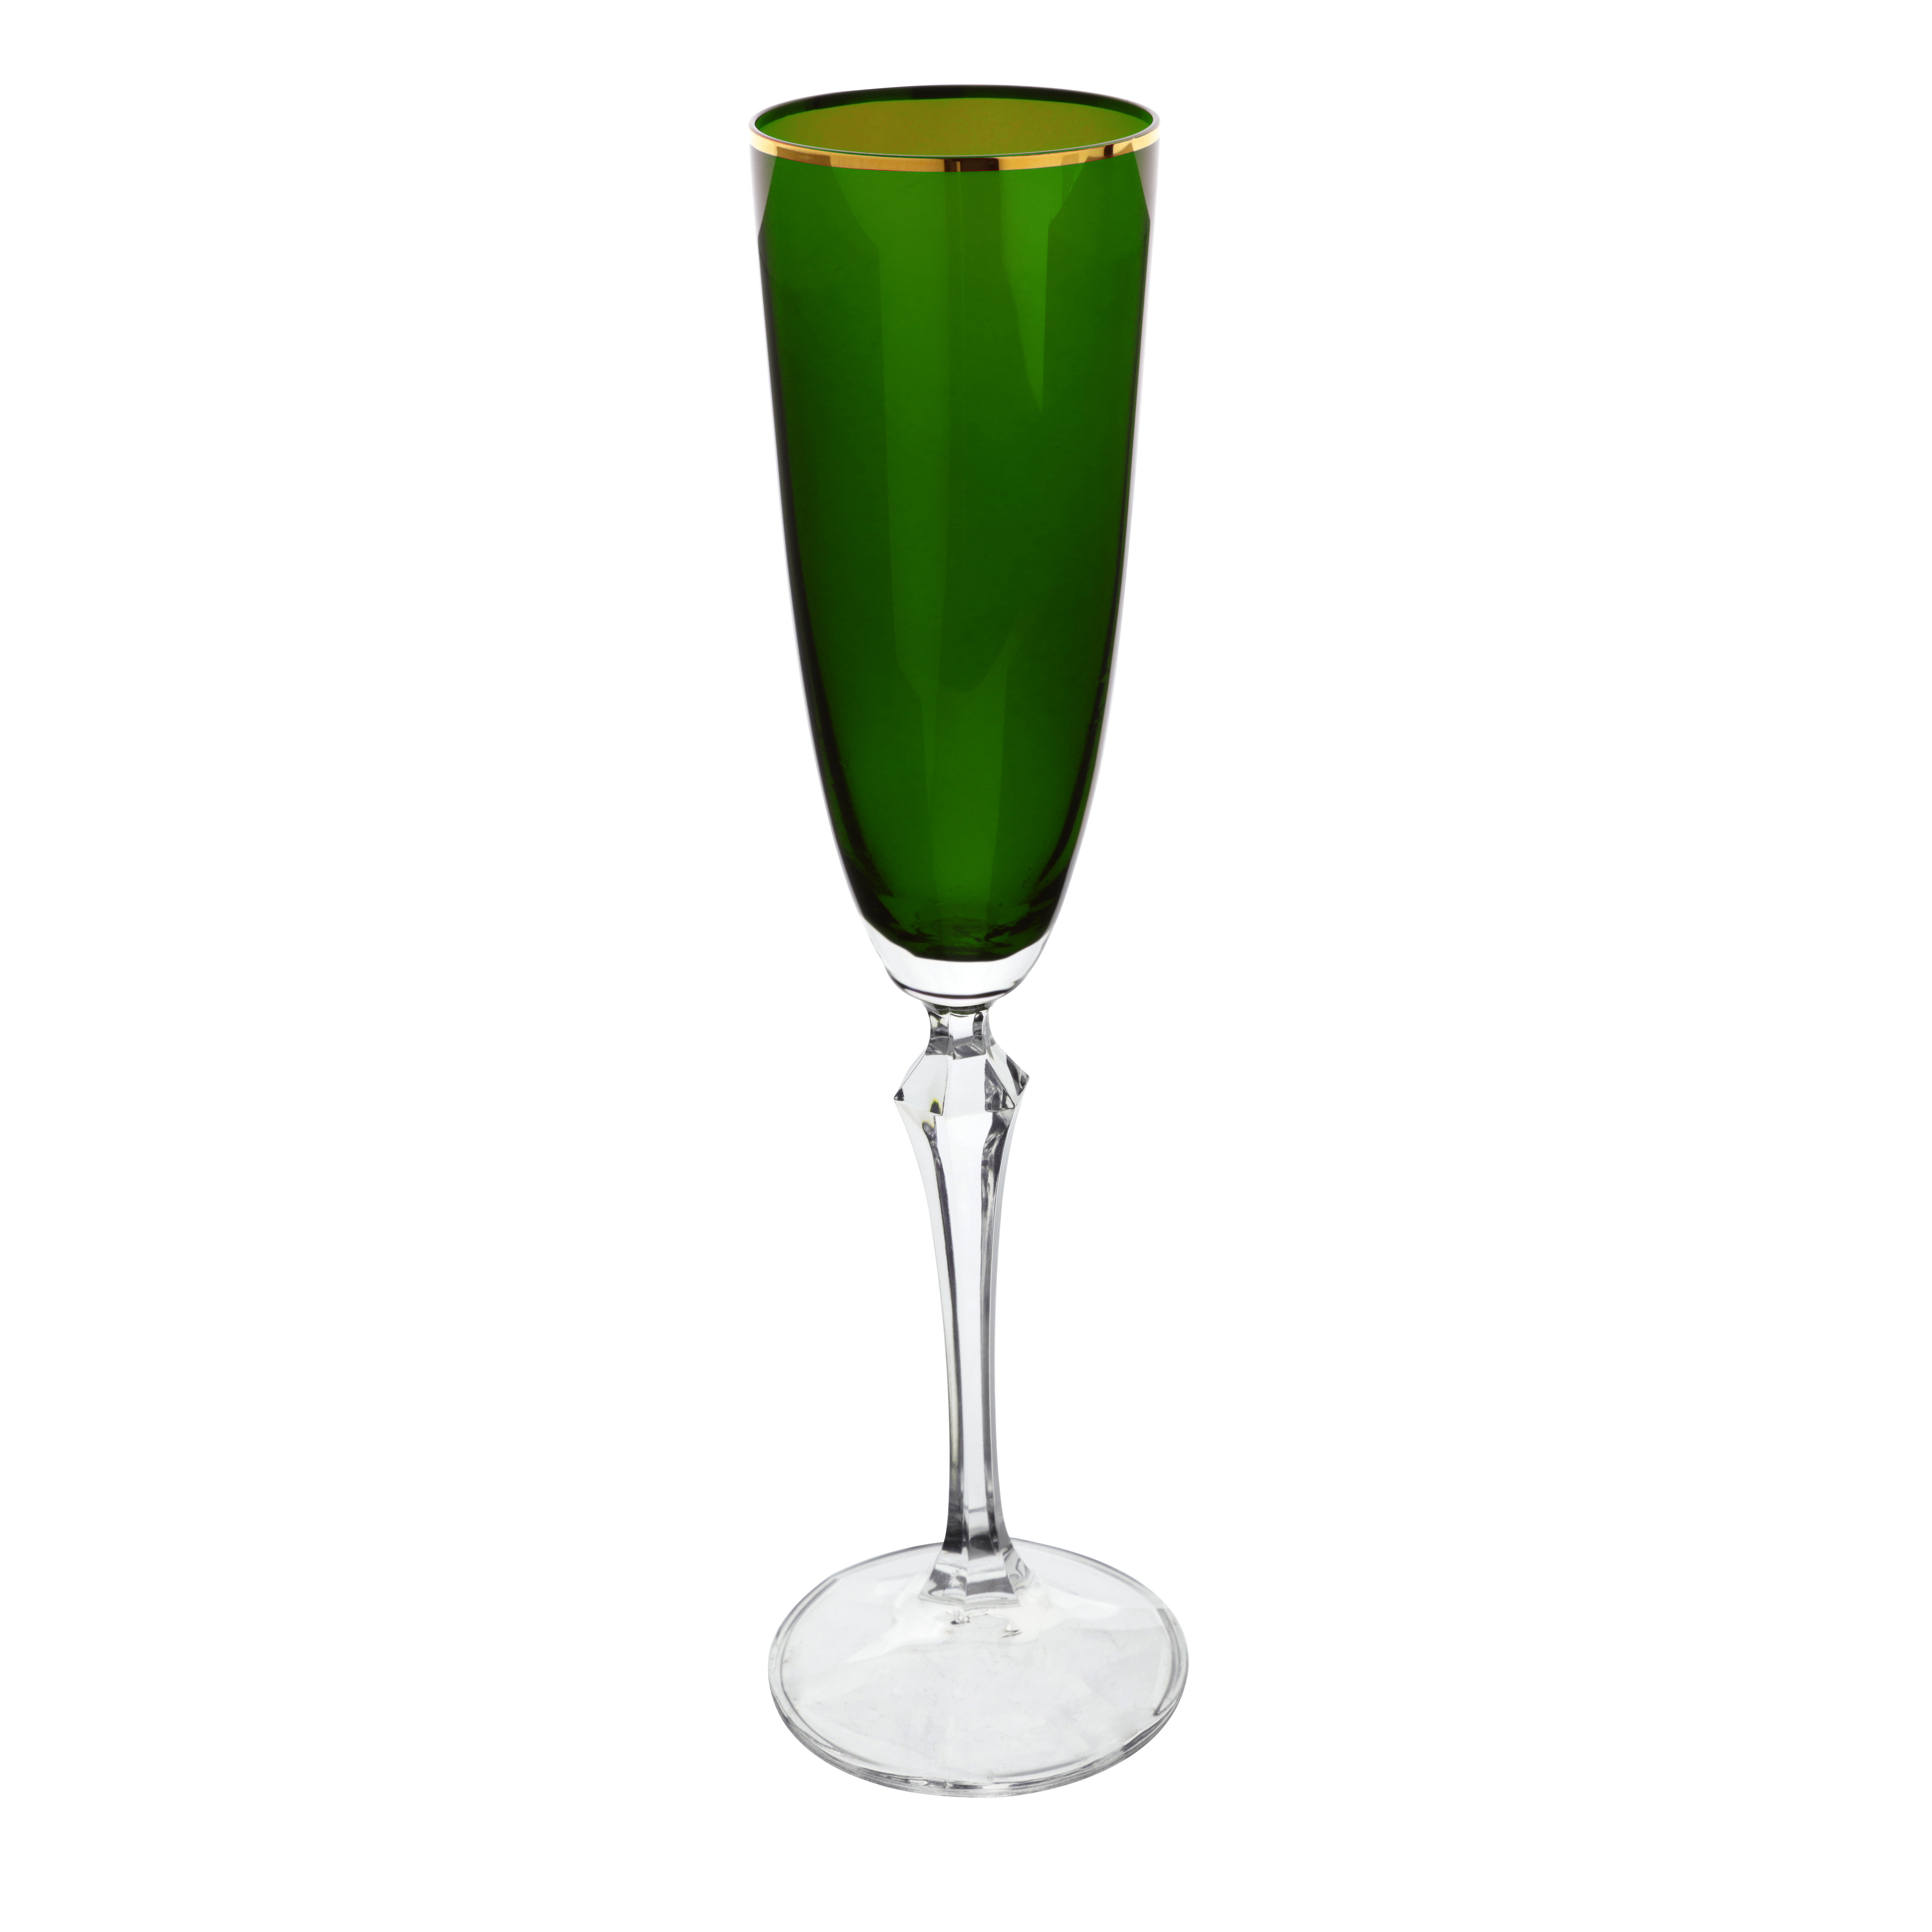 Jogo de 6 tacas para champanhe Elizabeth Gold Rim em cristal ecologico 200ml A25cm cor verde